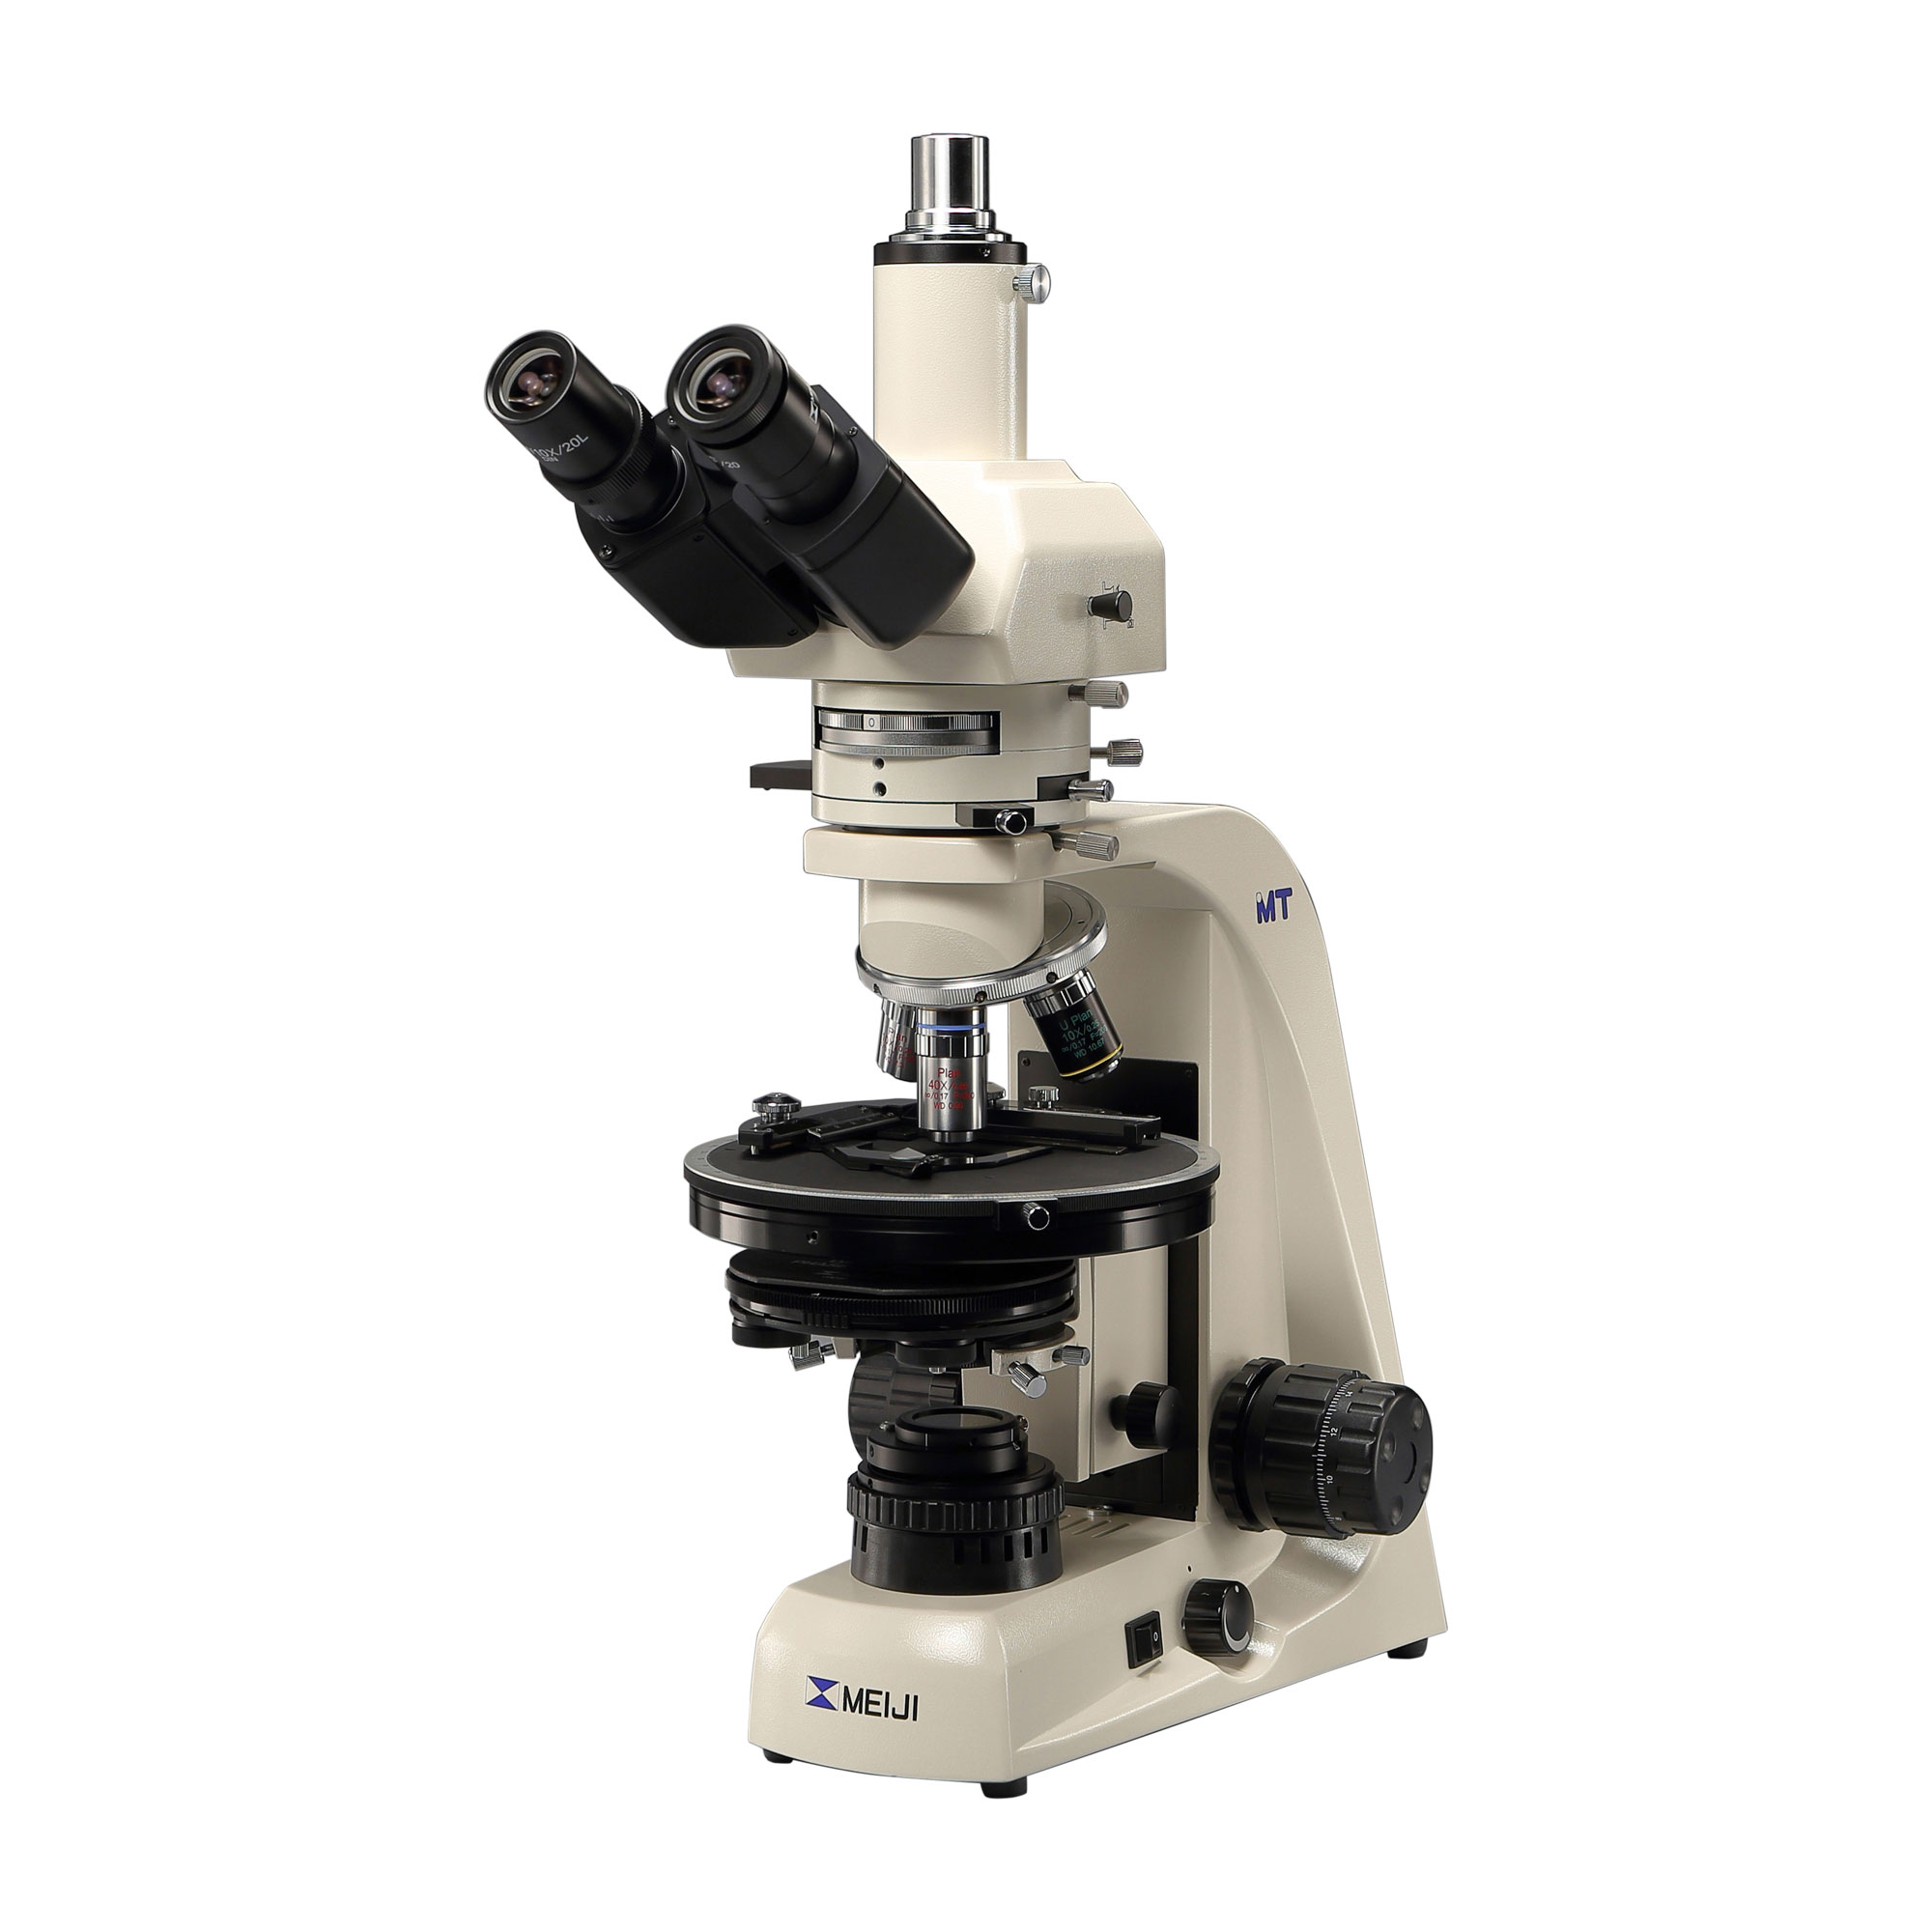 アスベスト測定用偏光･分散顕微鏡 MT6930型